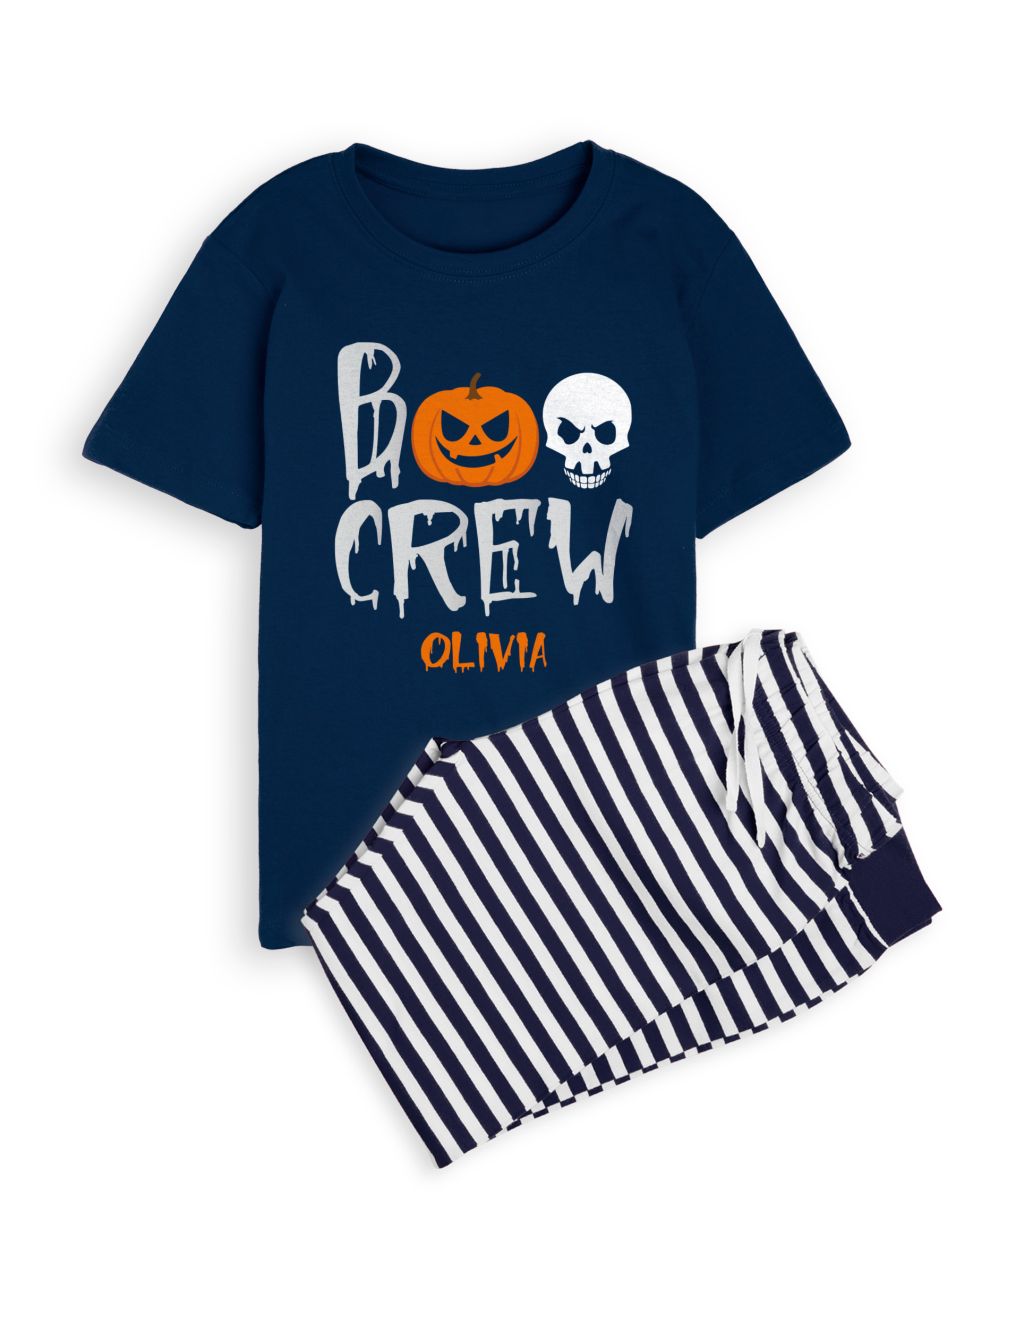 Personalised Boo Crew Kids Pyjamas (5-12 Yrs) image 1